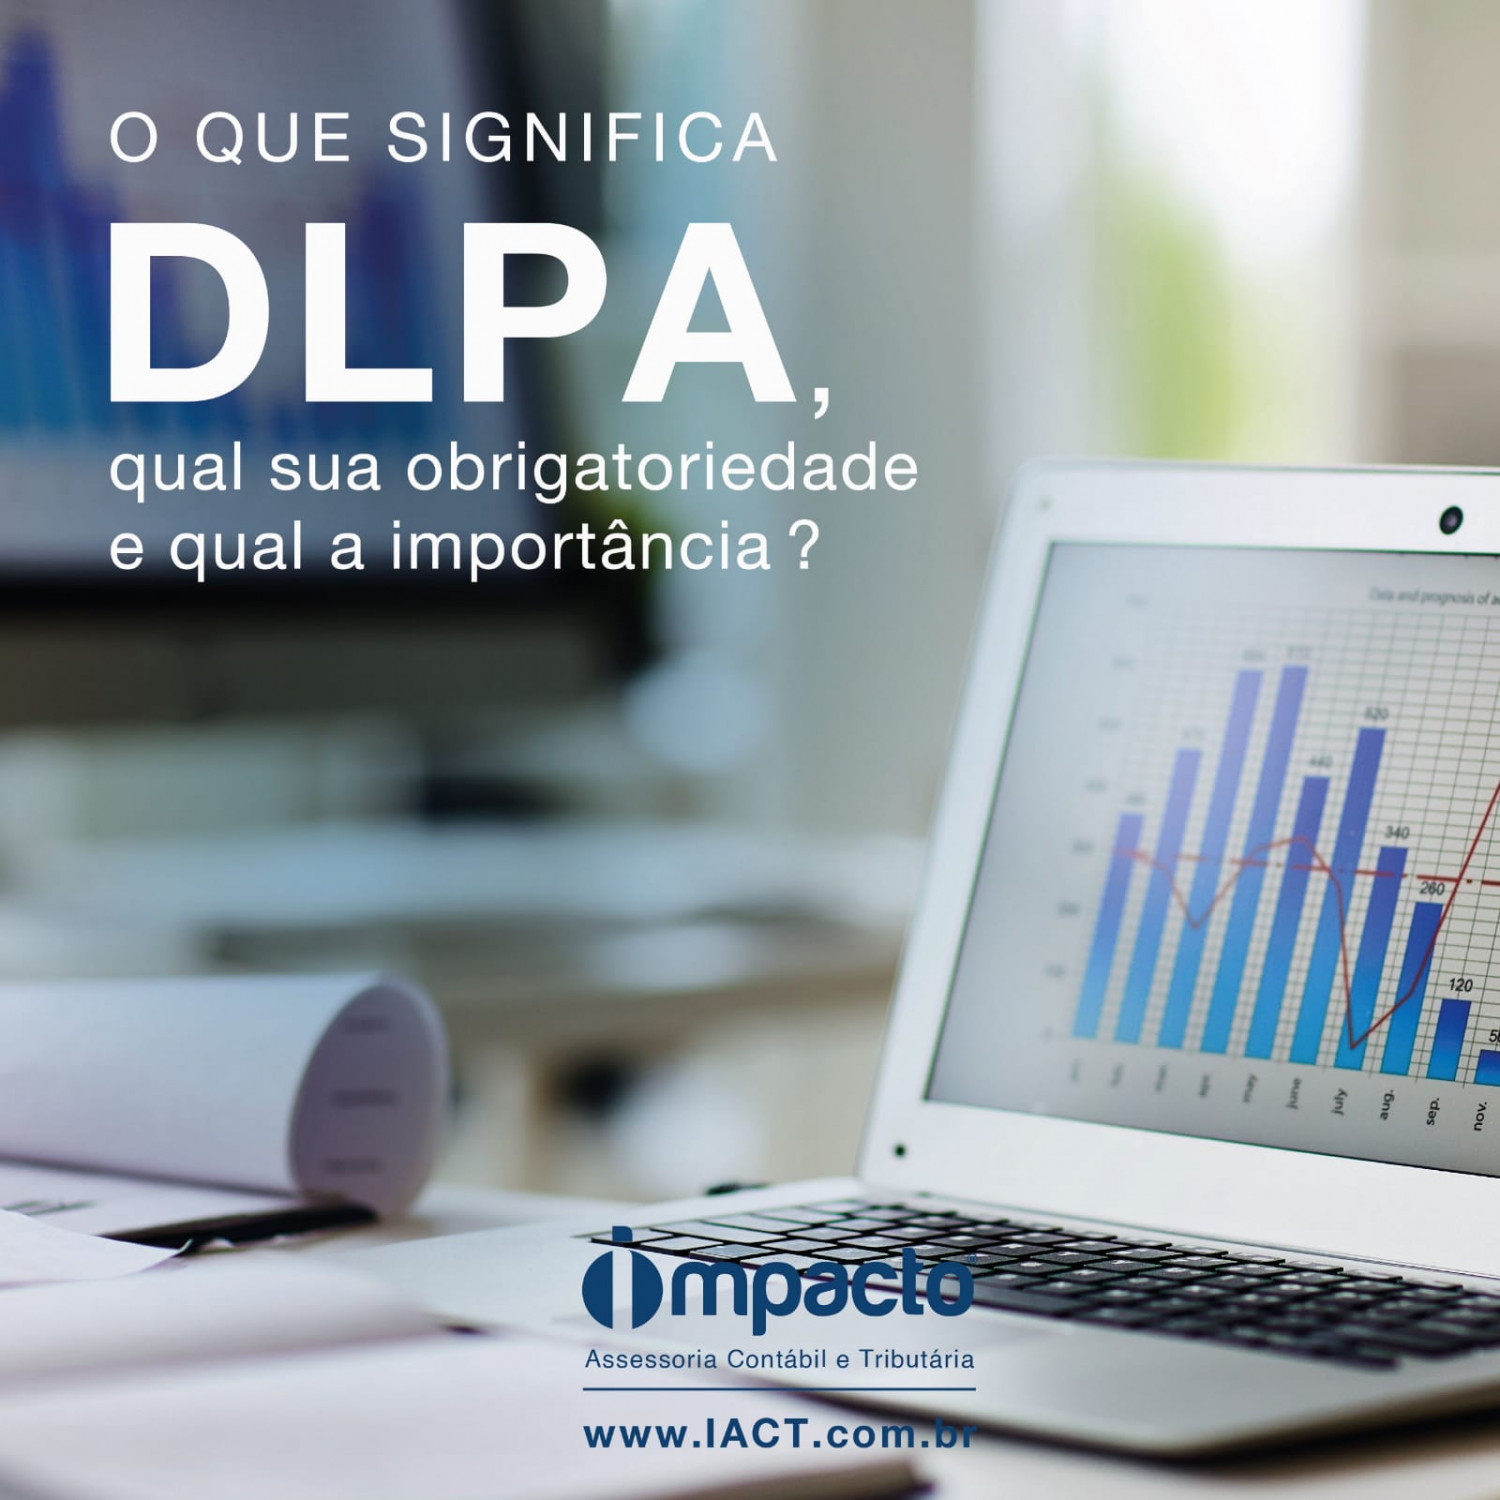 O que significa DLPA, qual sua obrigatoriedade e qual a importância?